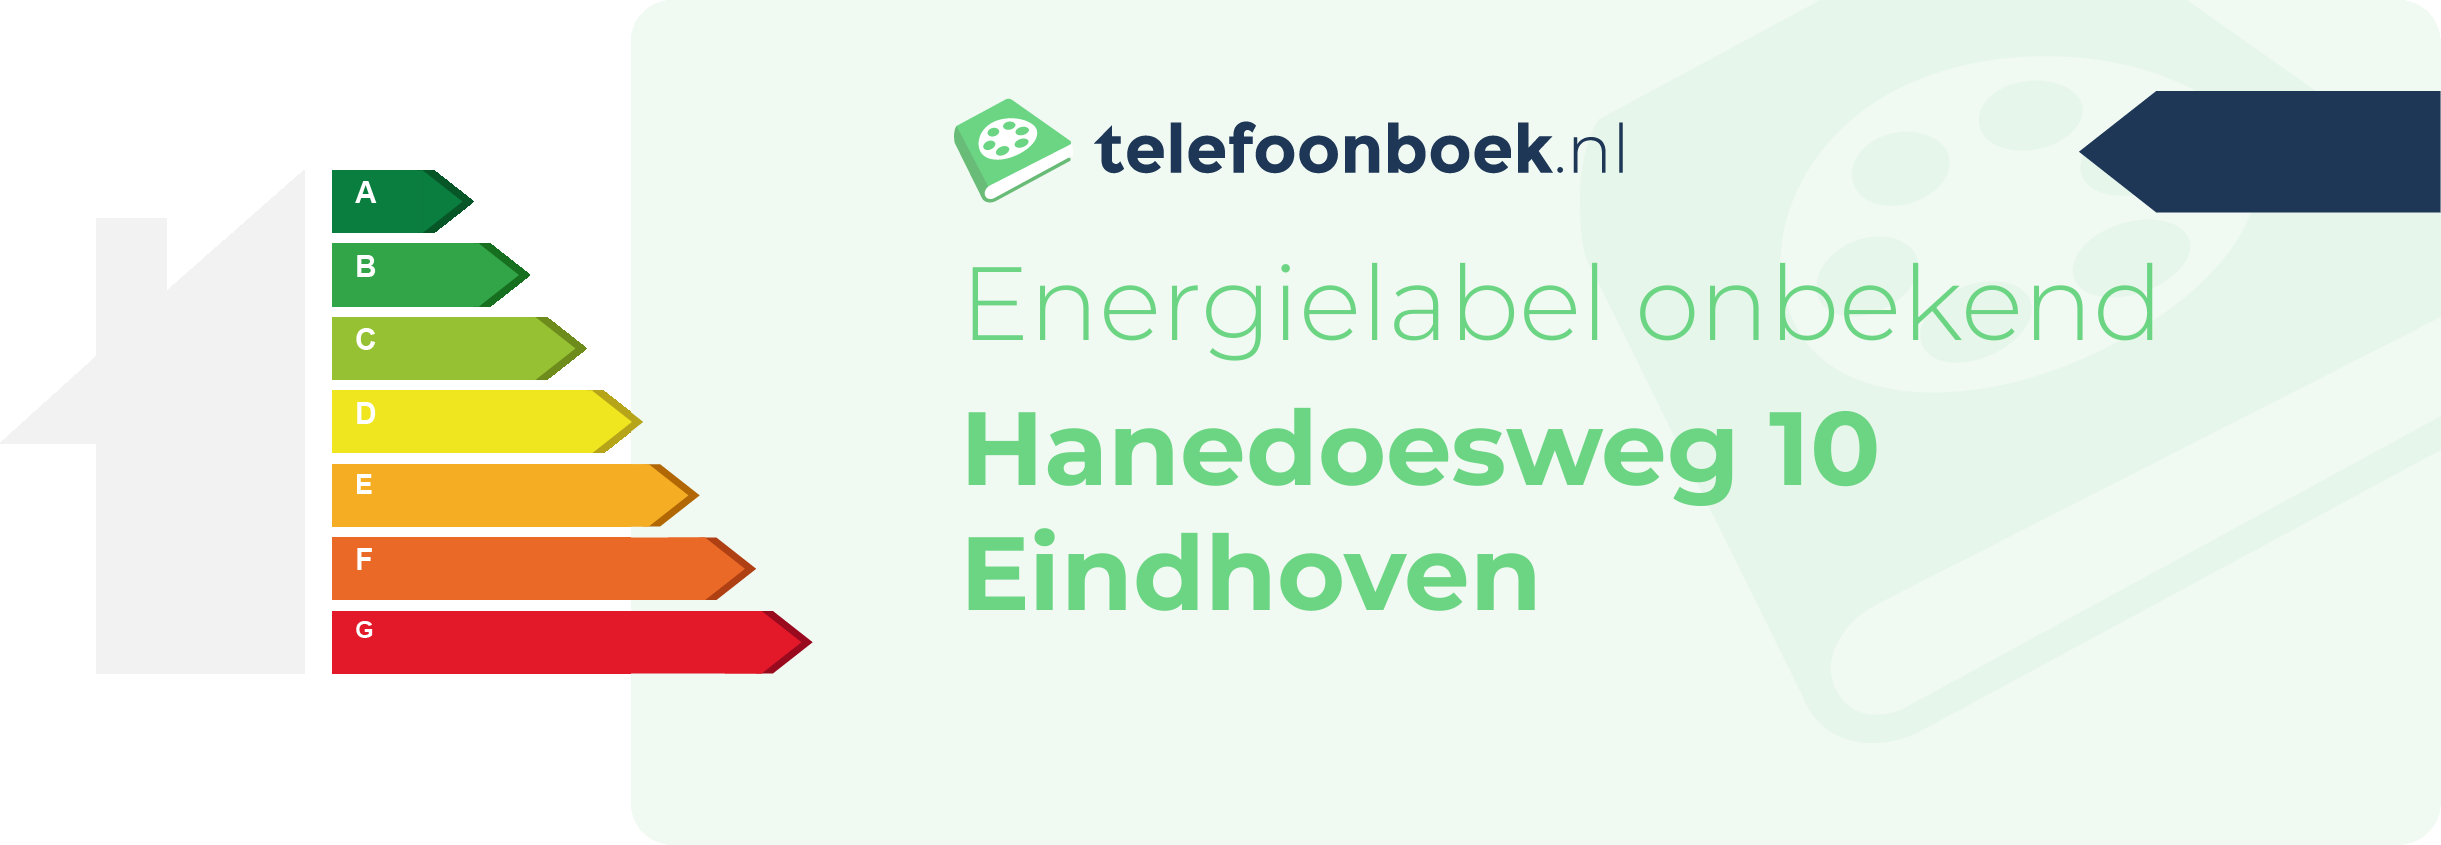 Energielabel Hanedoesweg 10 Eindhoven